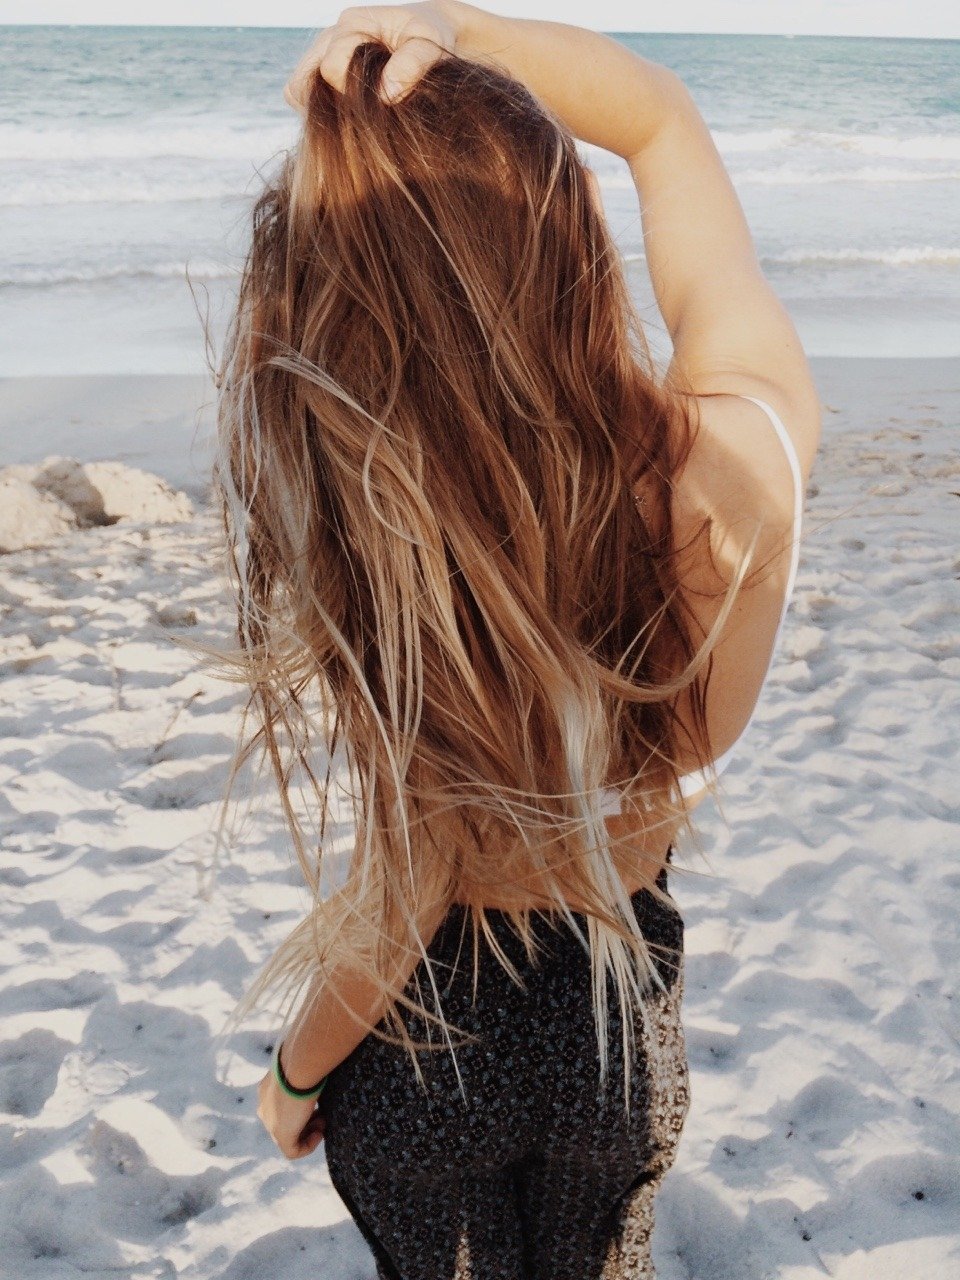 Красивые девушки русые волосы со спины